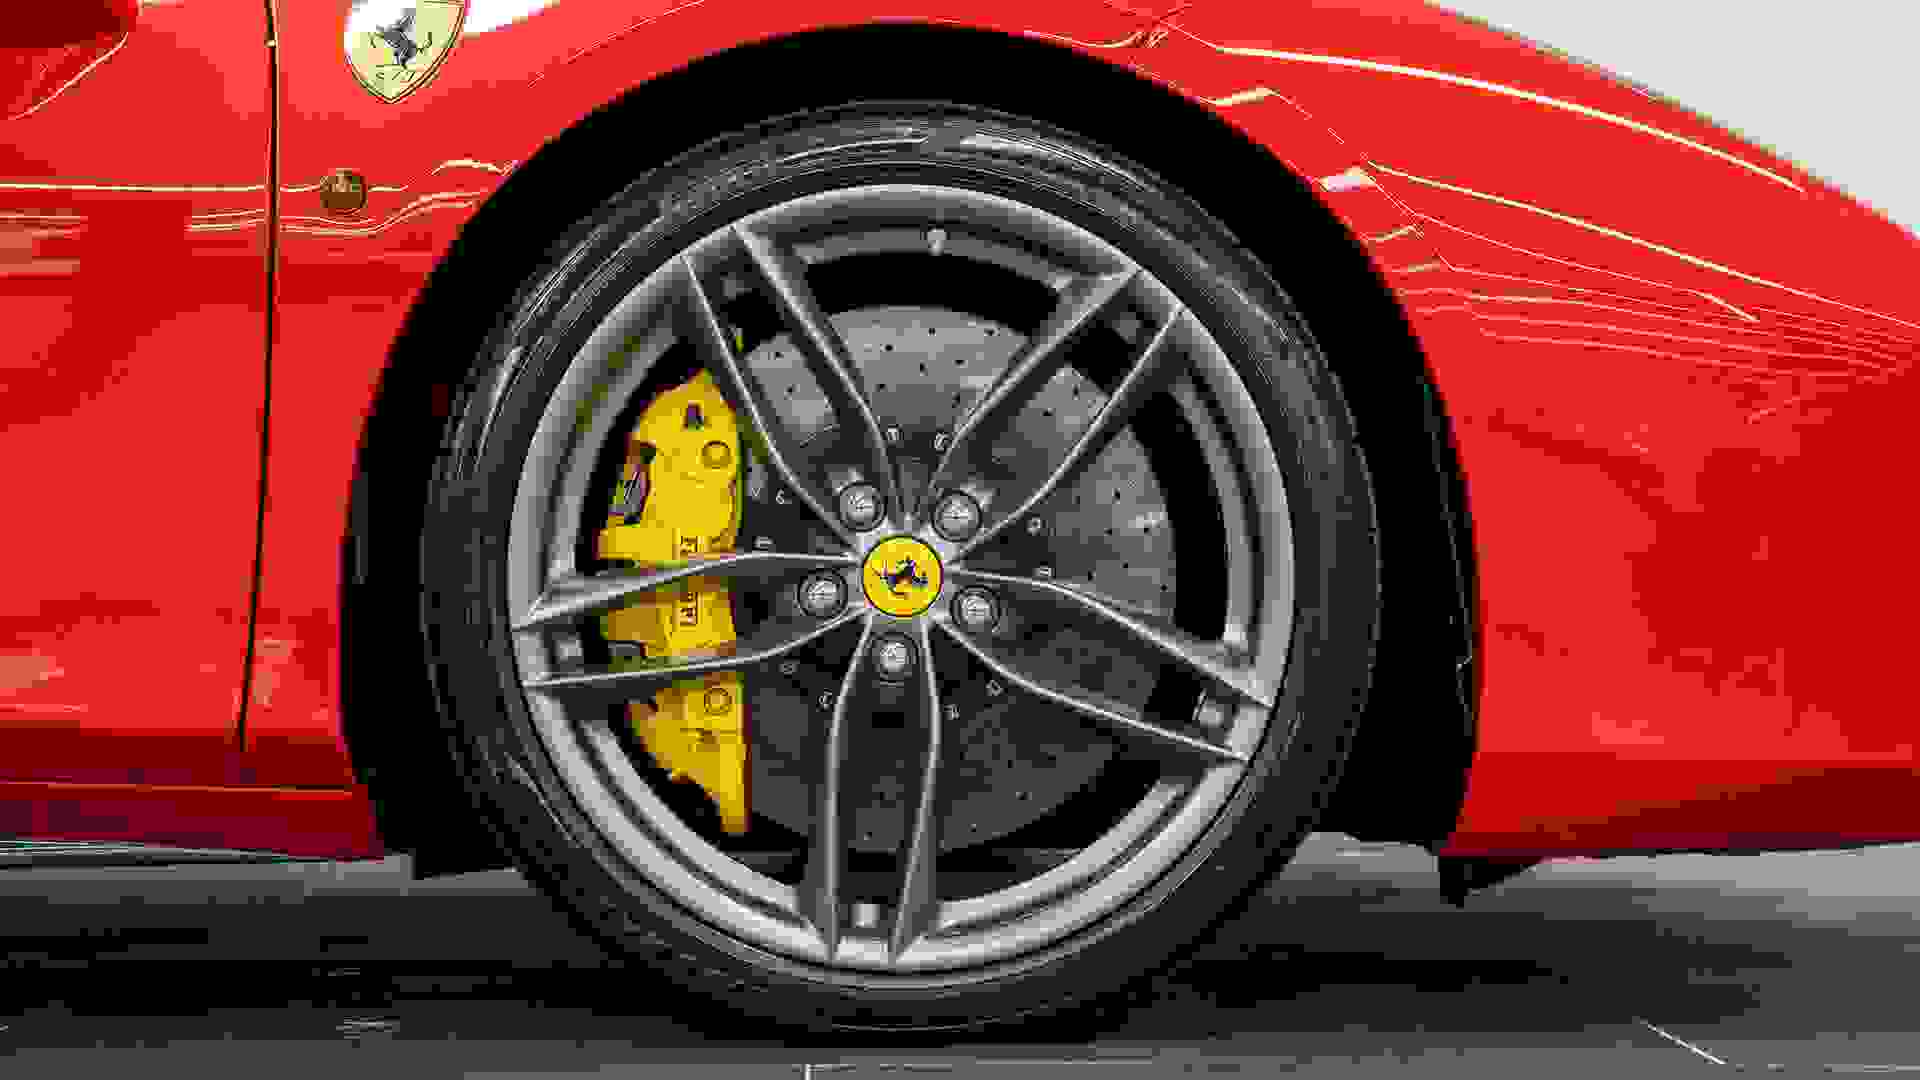 Ferrari 488 Photo 5a857fb9-8d19-4d66-842e-30e57428dfe7.jpg